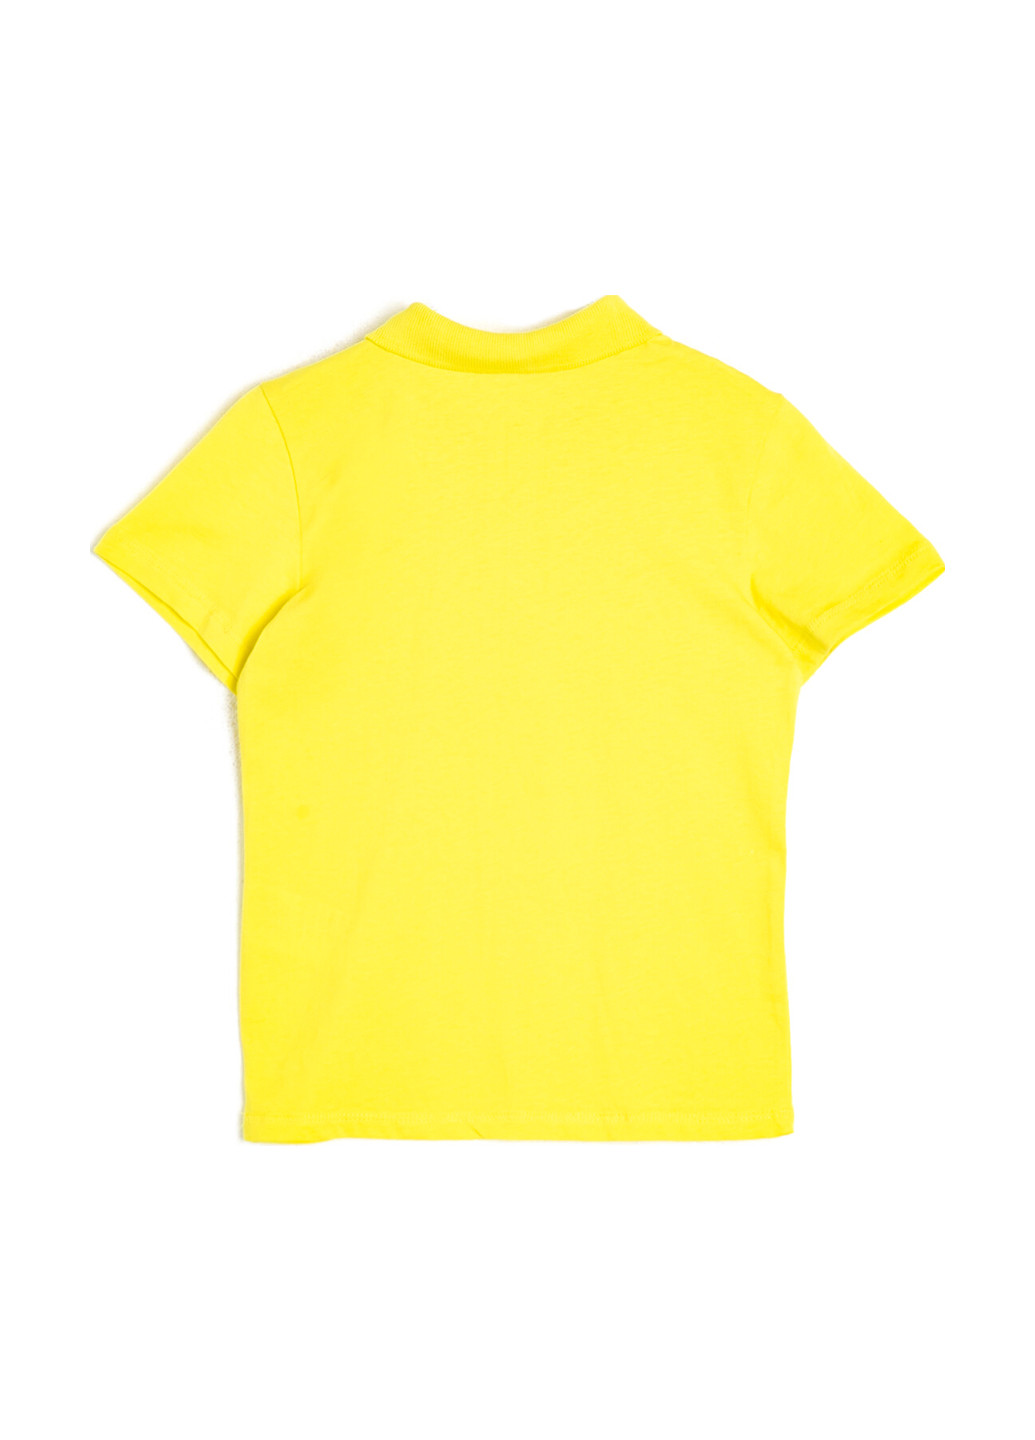 Желтая детская футболка-футболка для мальчика KOTON однотонная